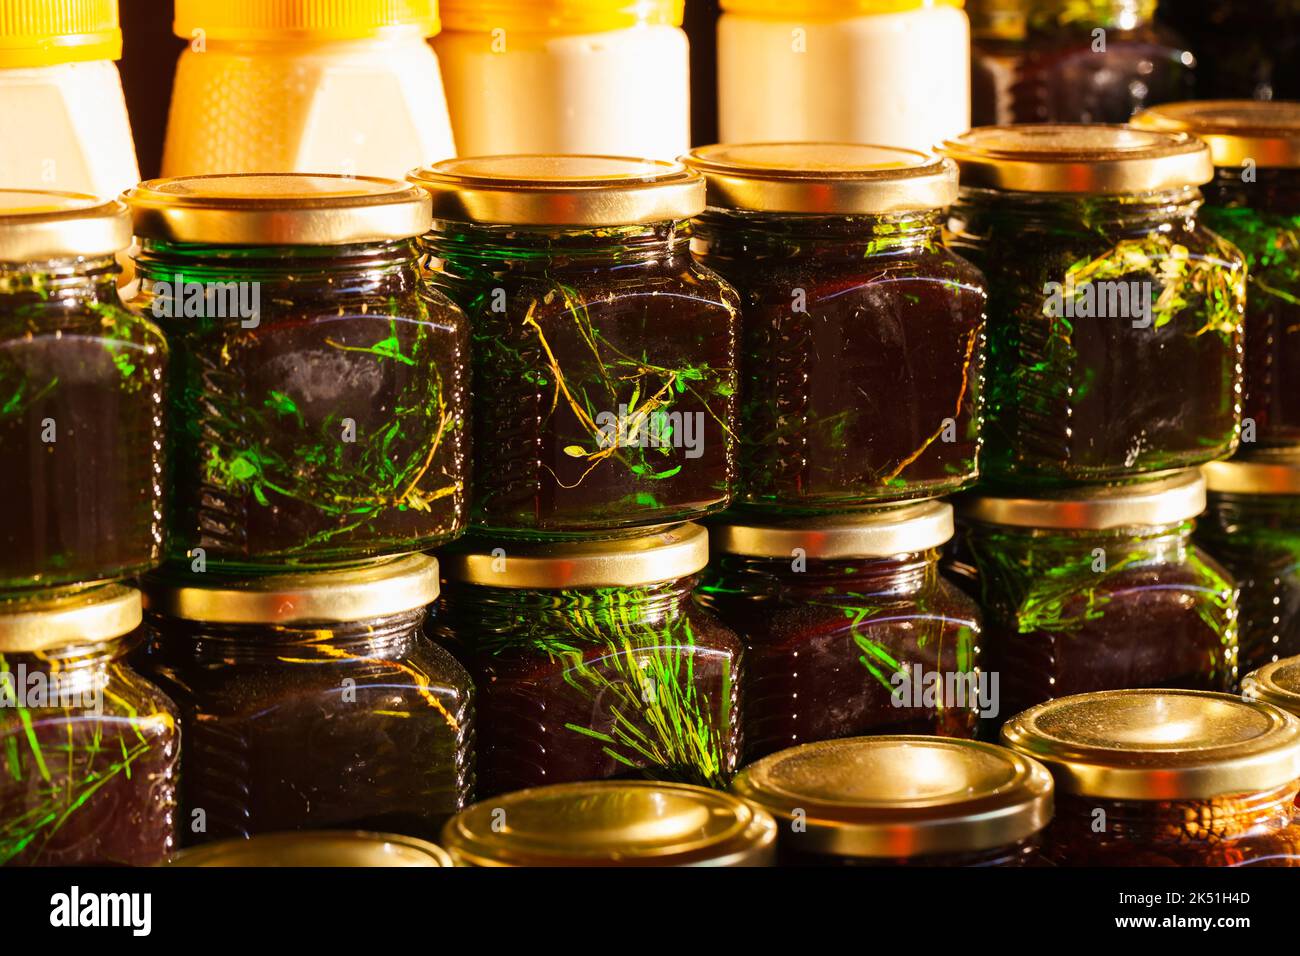 Des bocaux de miel avec des herbes et des aiguilles de pin sibérien se tiennent sur une fenêtre de magasin dans une rangée. Gros plan avec mise au point douce sélective Banque D'Images